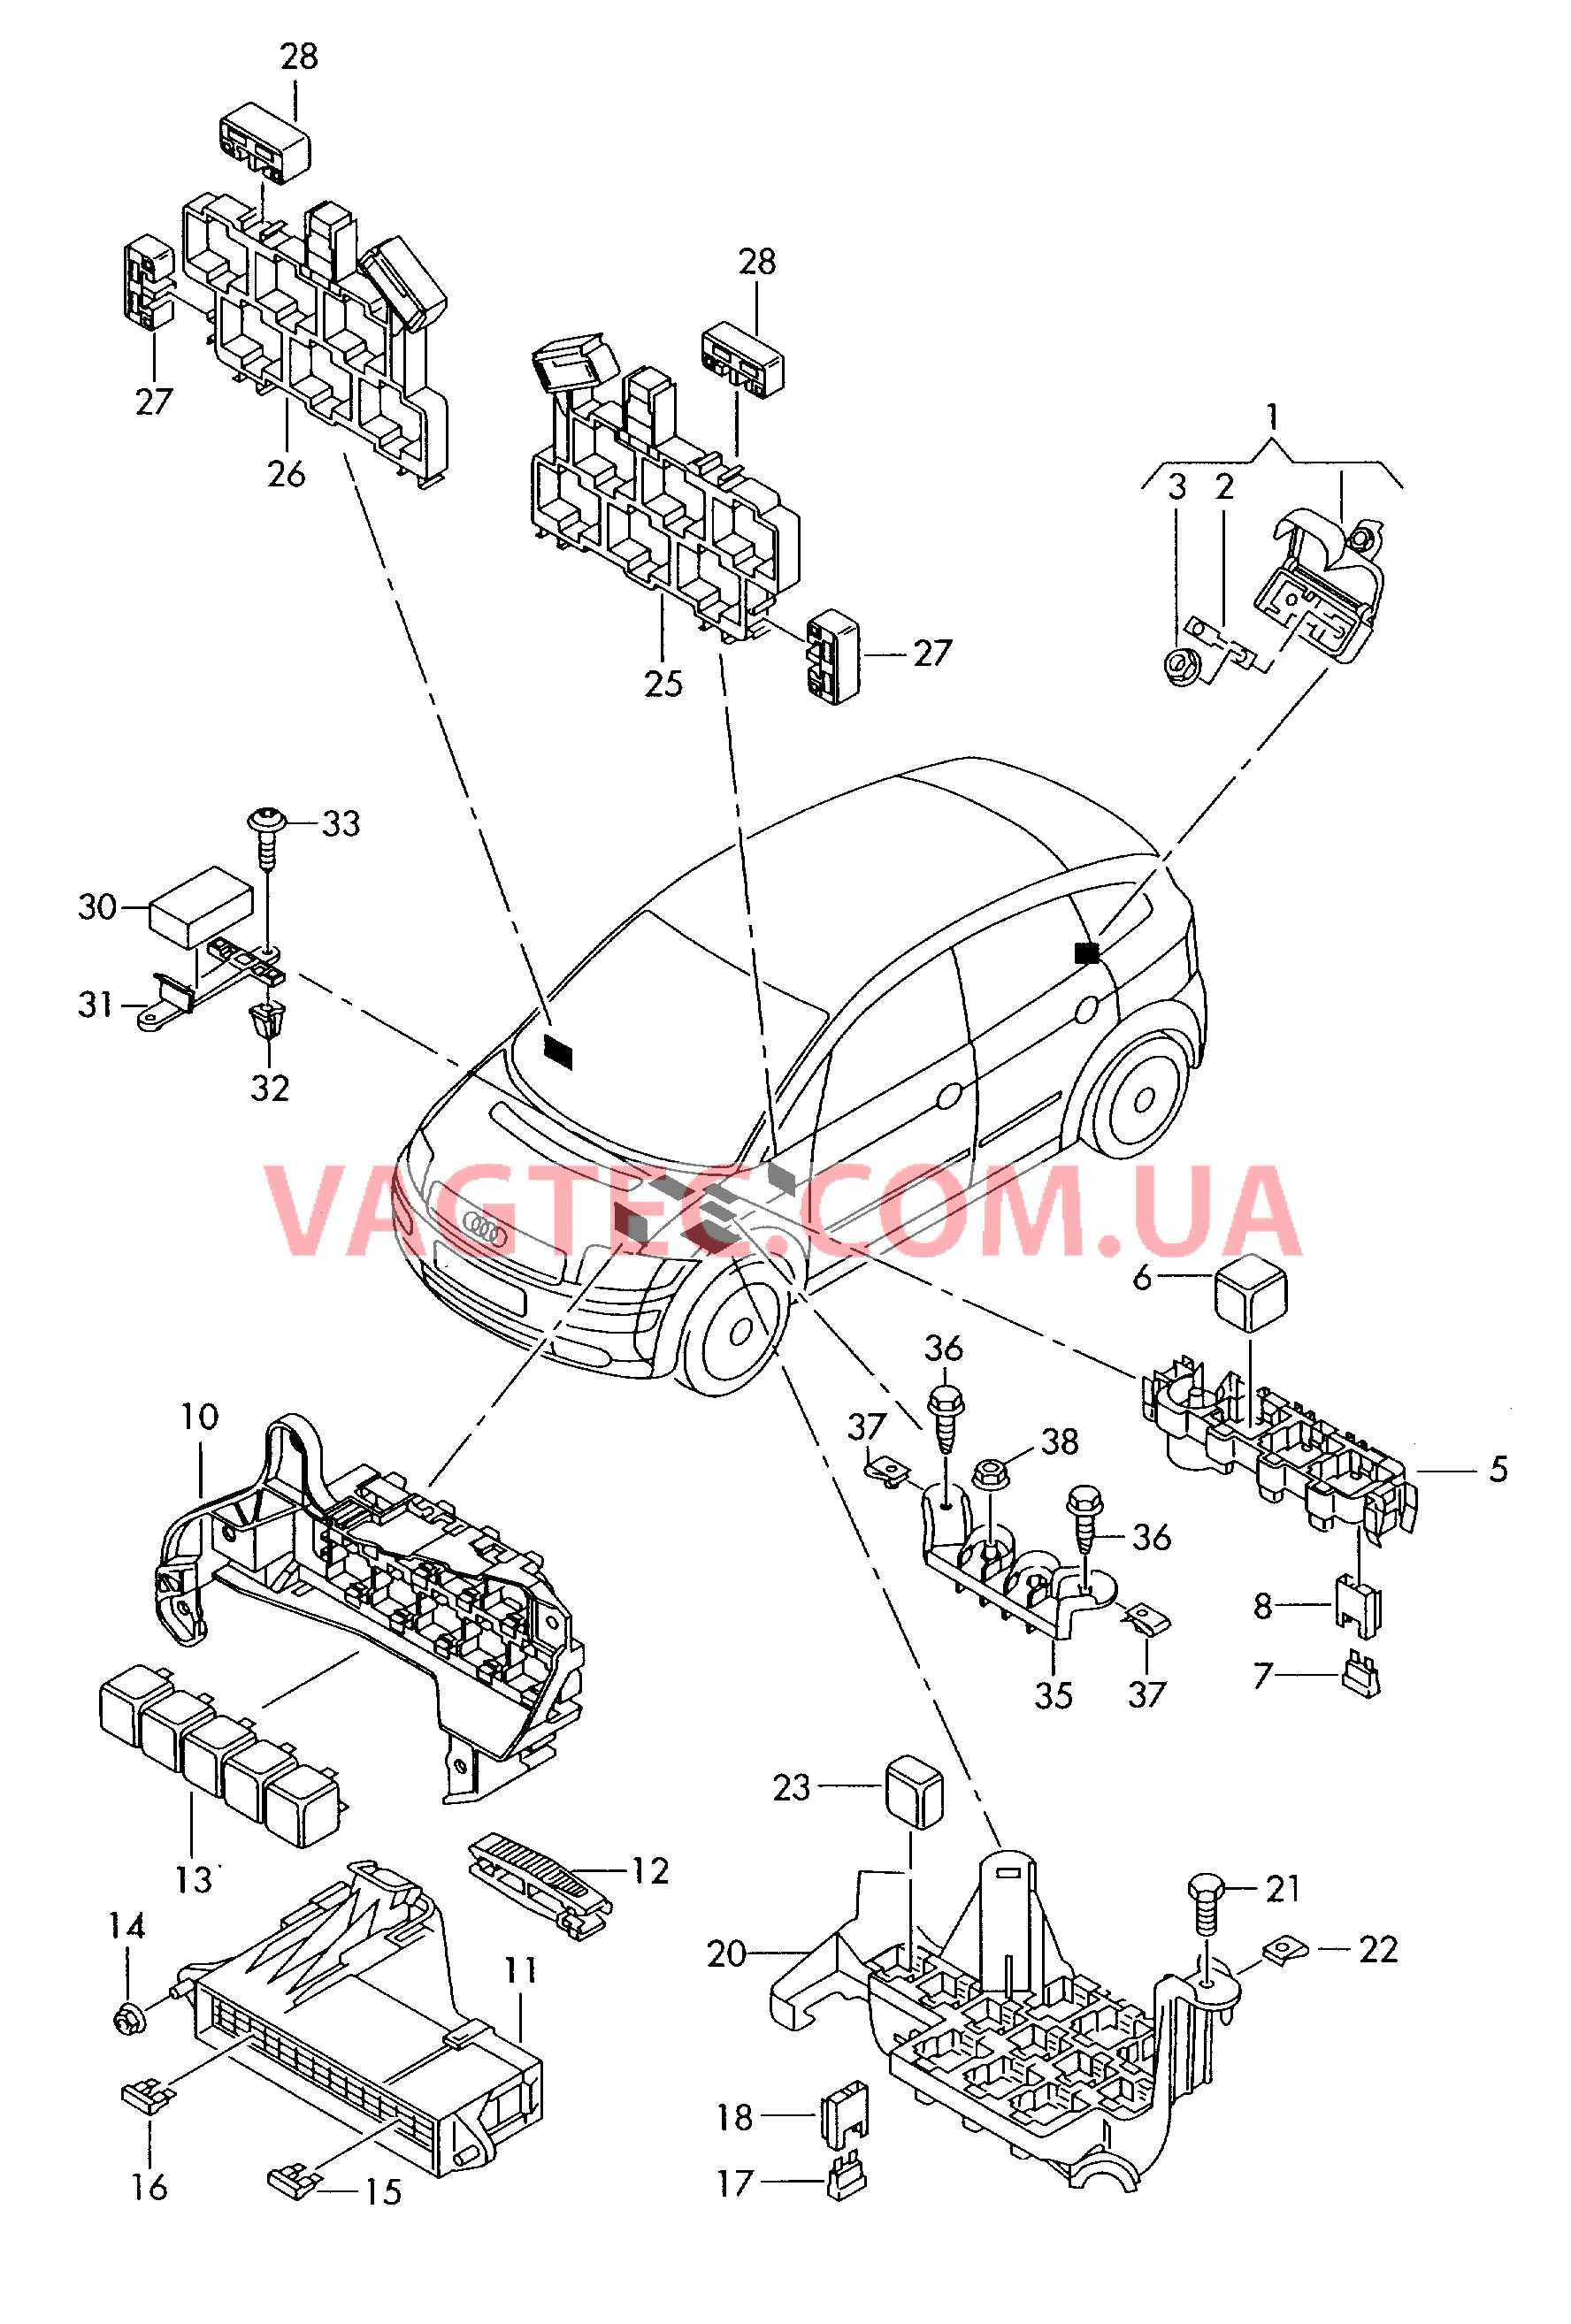 Коммутац. бл., гнездо предохранителя, колодка реле и реле  для AUDI A2 2002